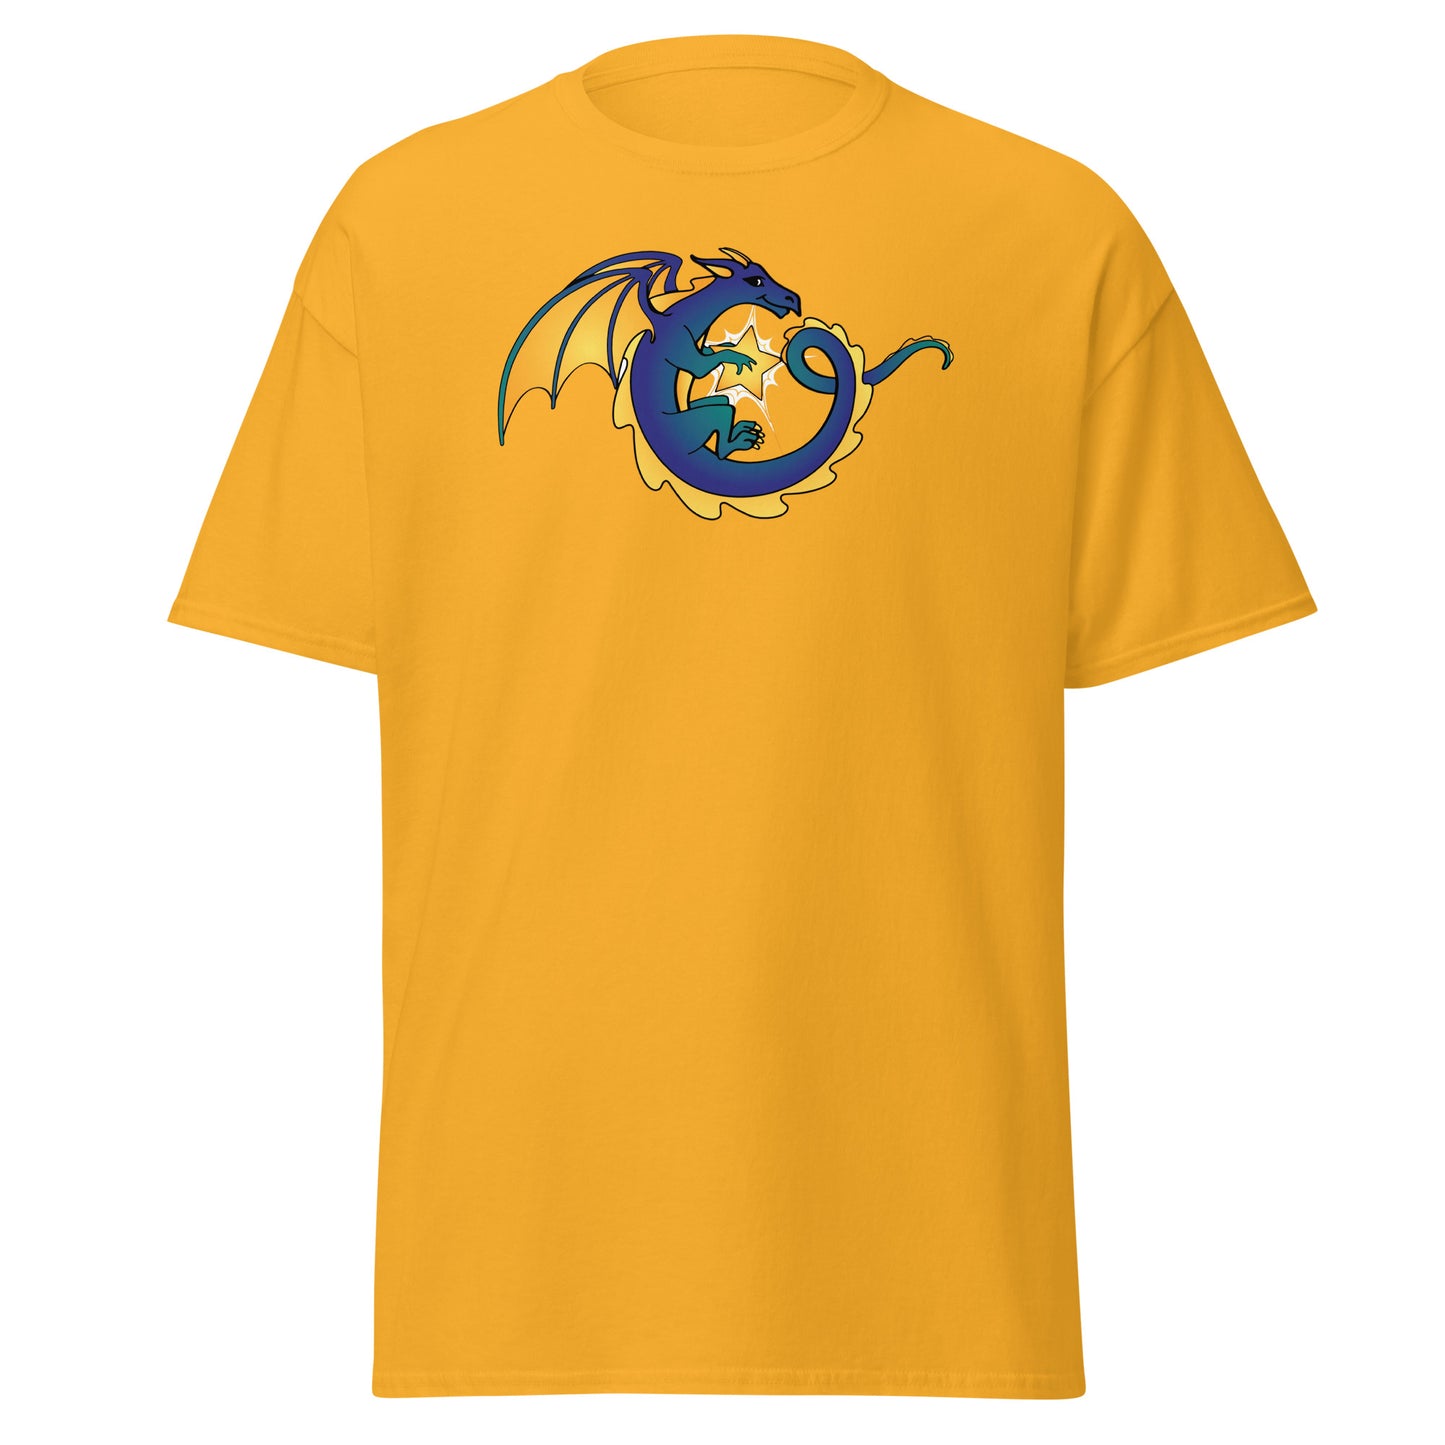 Border Star Dragon T-Shirt